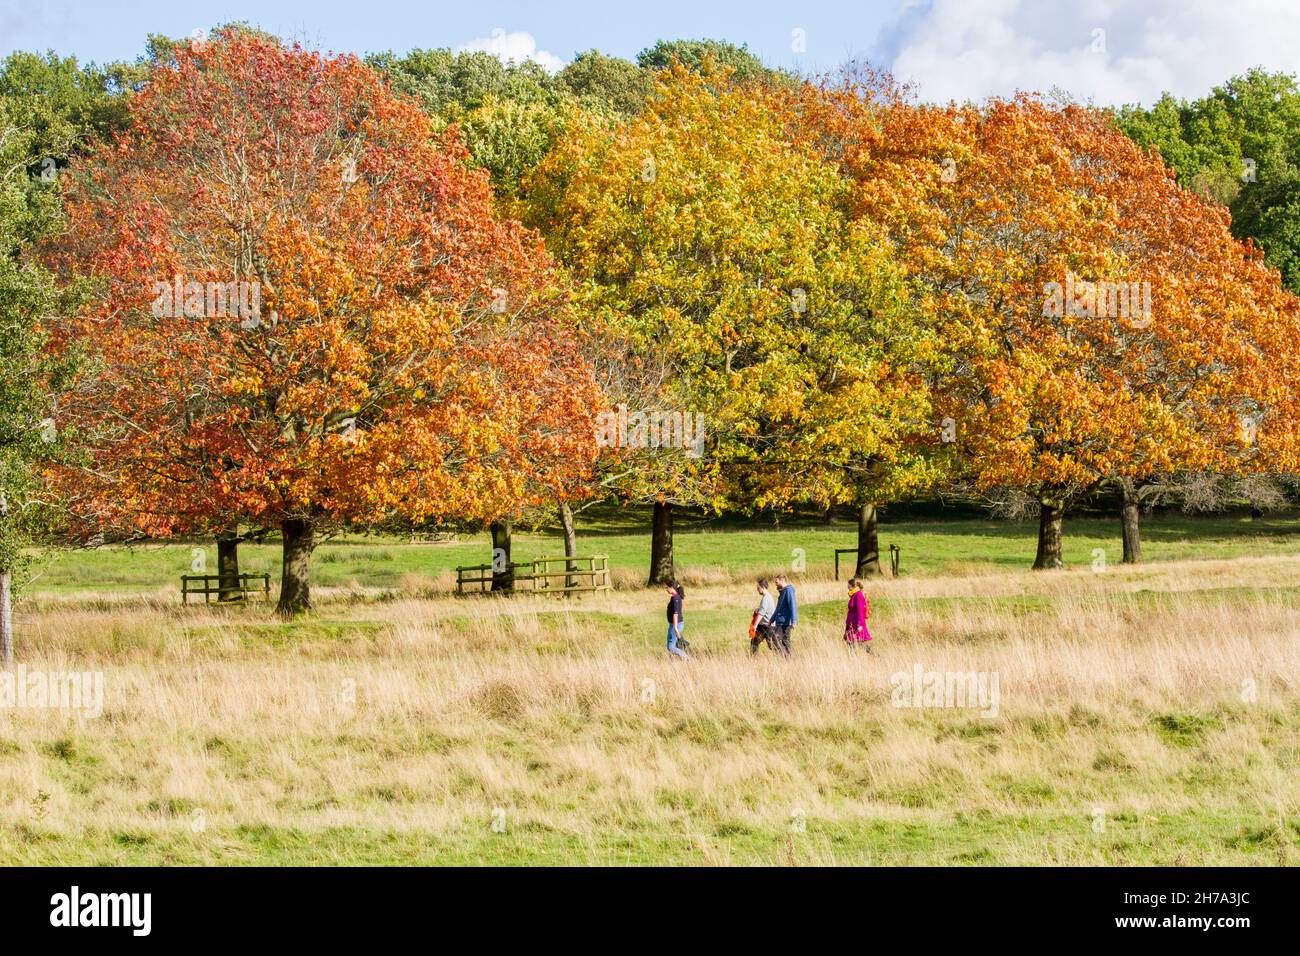 Hommes femmes profitant d'une journée d'automne à pied dans la confiance nationale et Cheshire East propriété Tatton Park parc parc Knutsford Cheshire Angleterre Banque D'Images